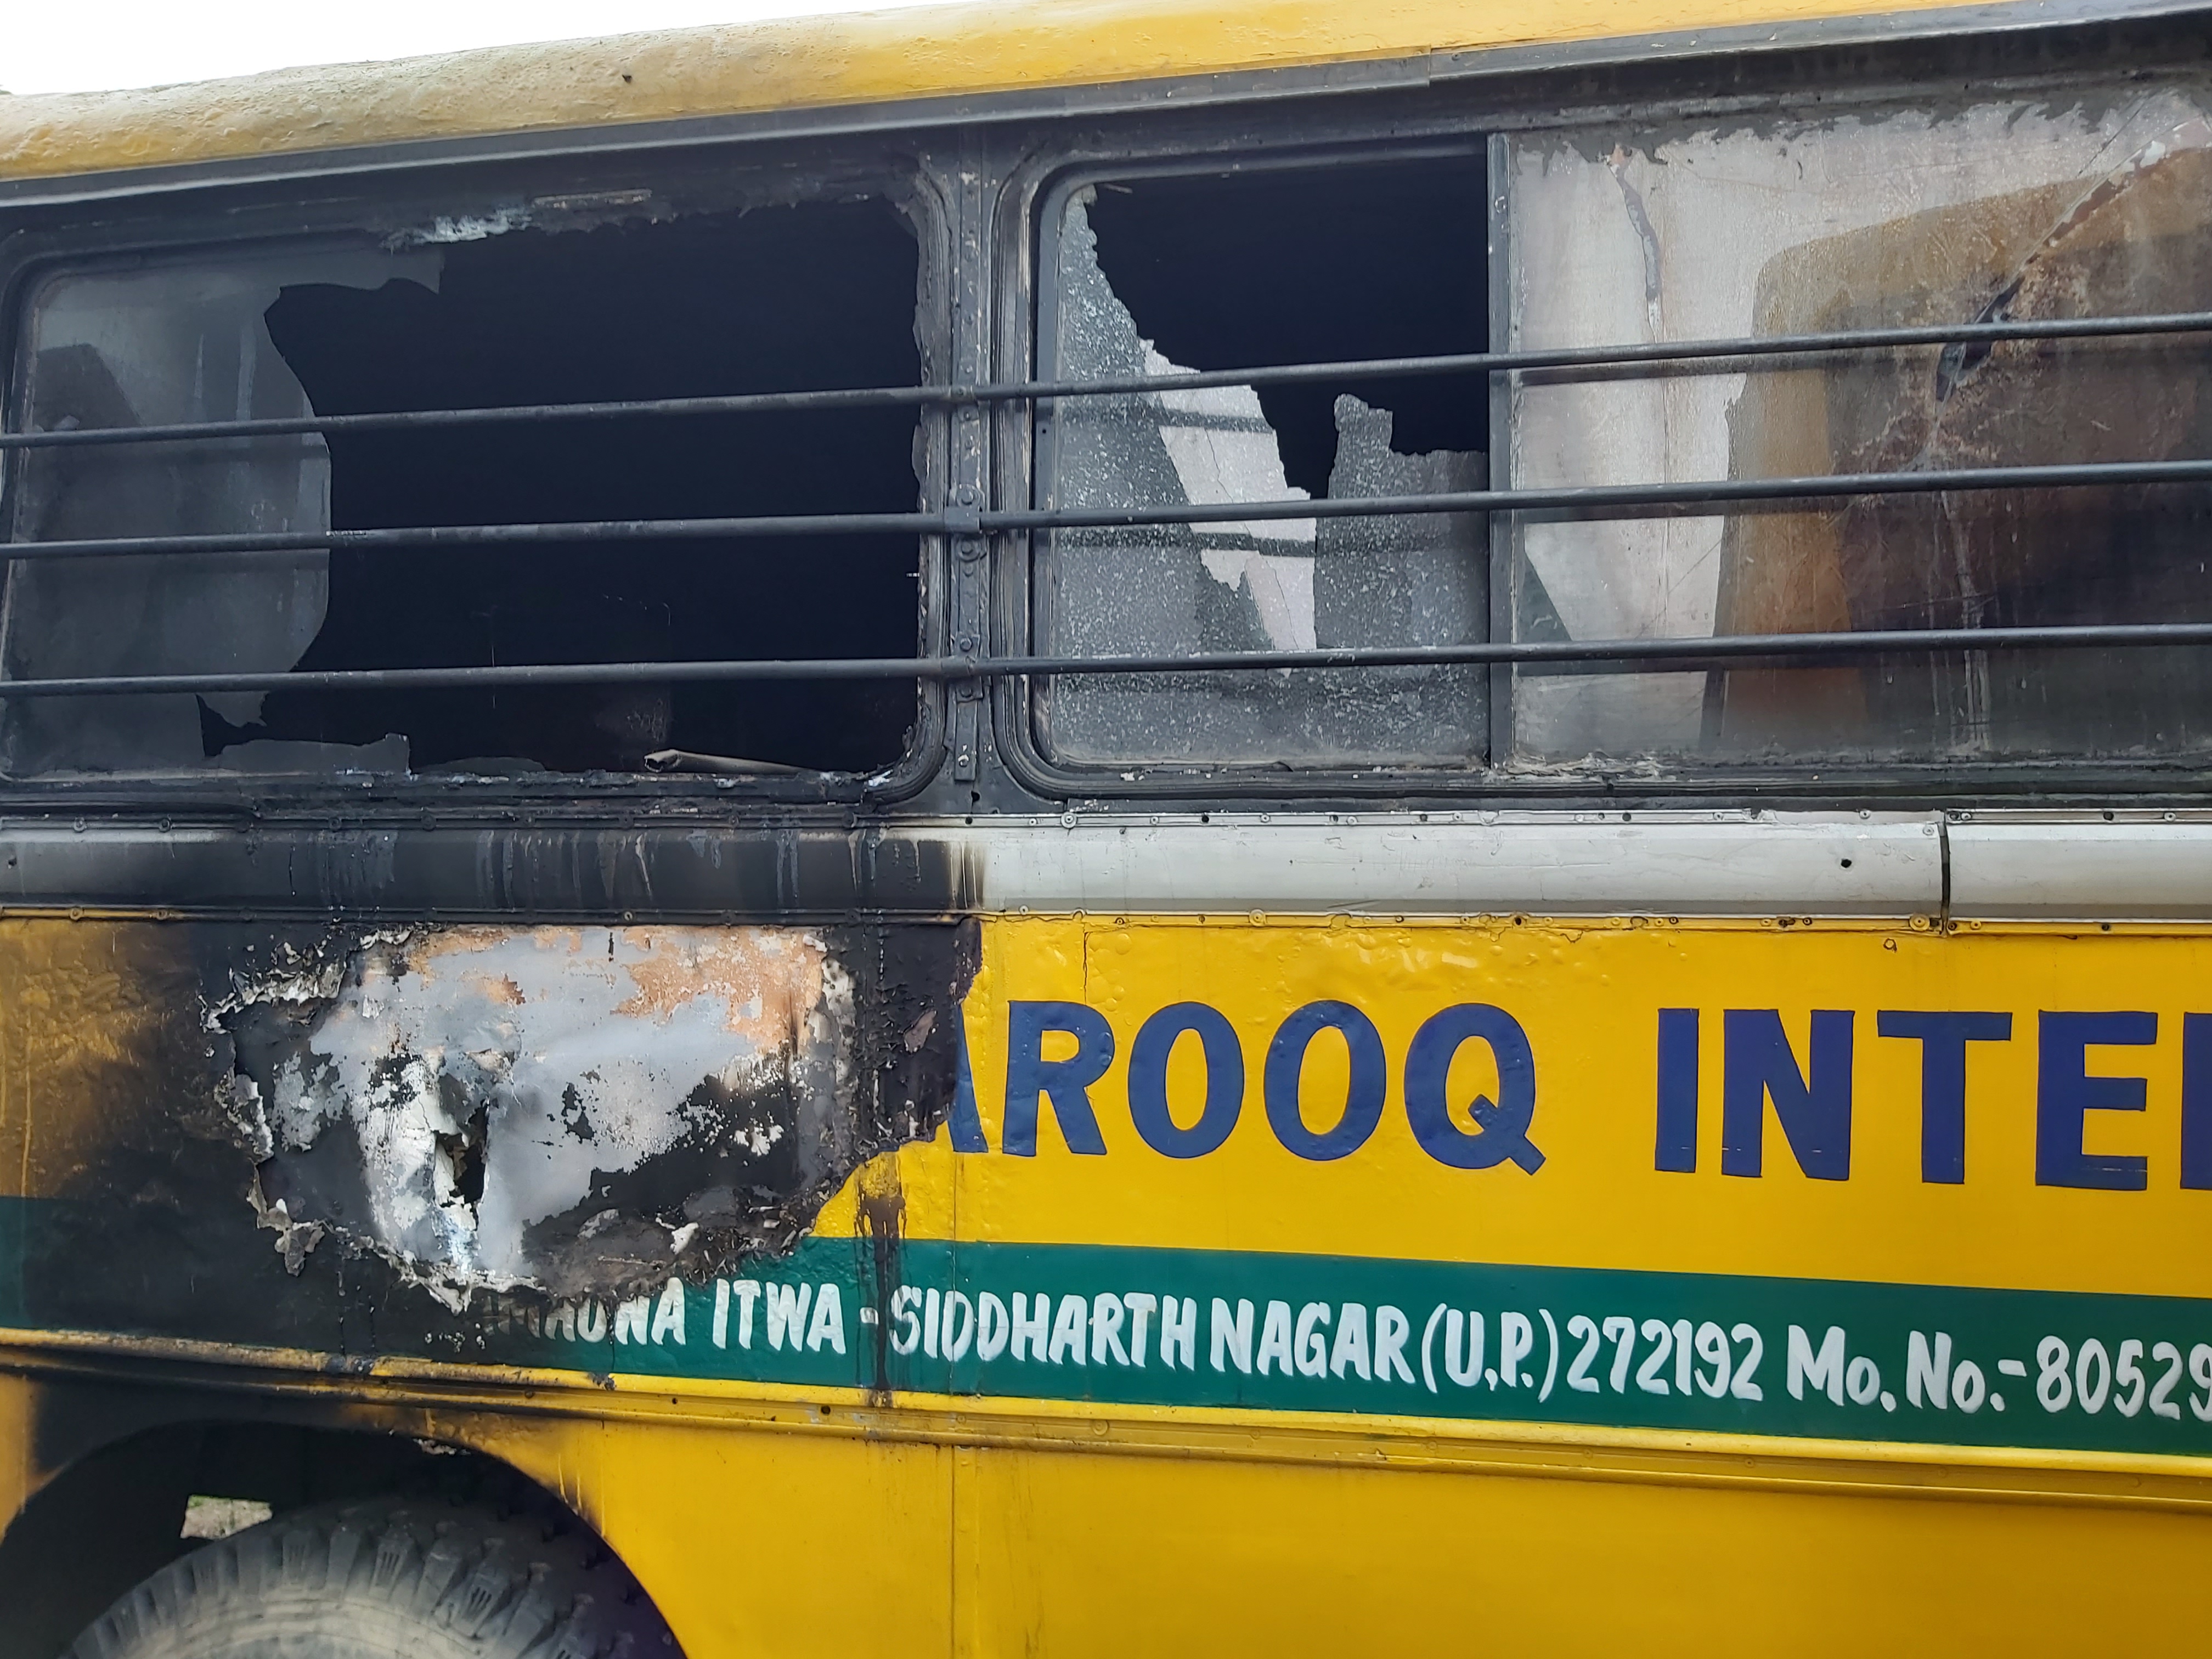 अल फारूक़ इंटर कॉलेज बस आगजनी मामला: बसों को जलाना बड़ी साजिश, घटना का पर्दाफाश करे प्रसाशन: अरशद खुर्शीद | New India Times